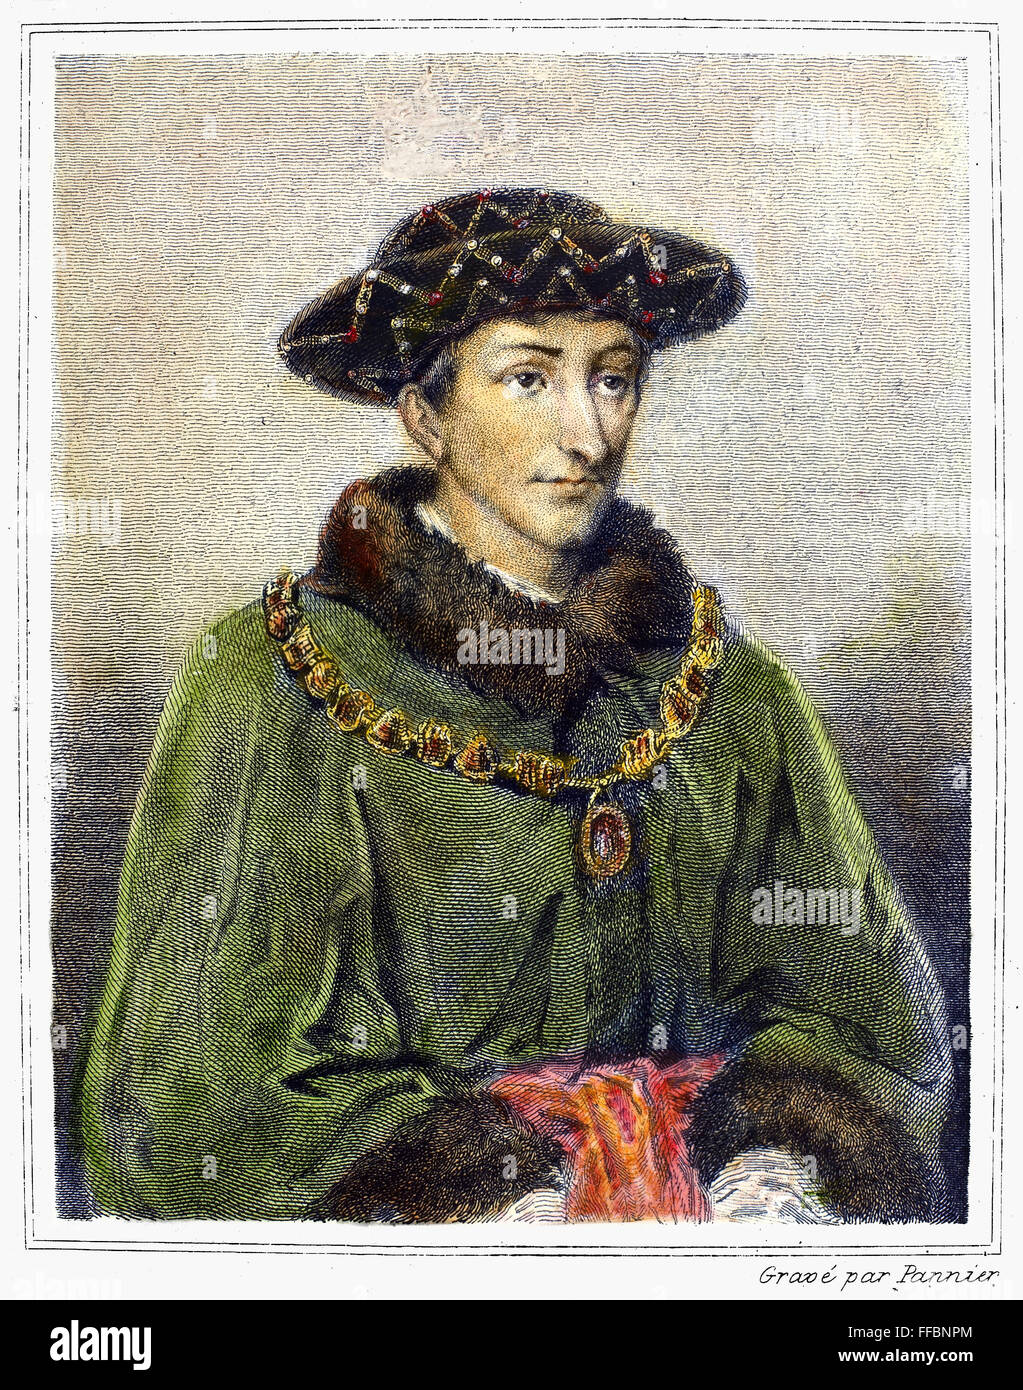 Carlos VII (1403-1461). /NKing de Francia, 1422-1461. Acero grabado, Francés de 1838, después de la pintura por Henri Lehmann (1814-1882). Foto de stock